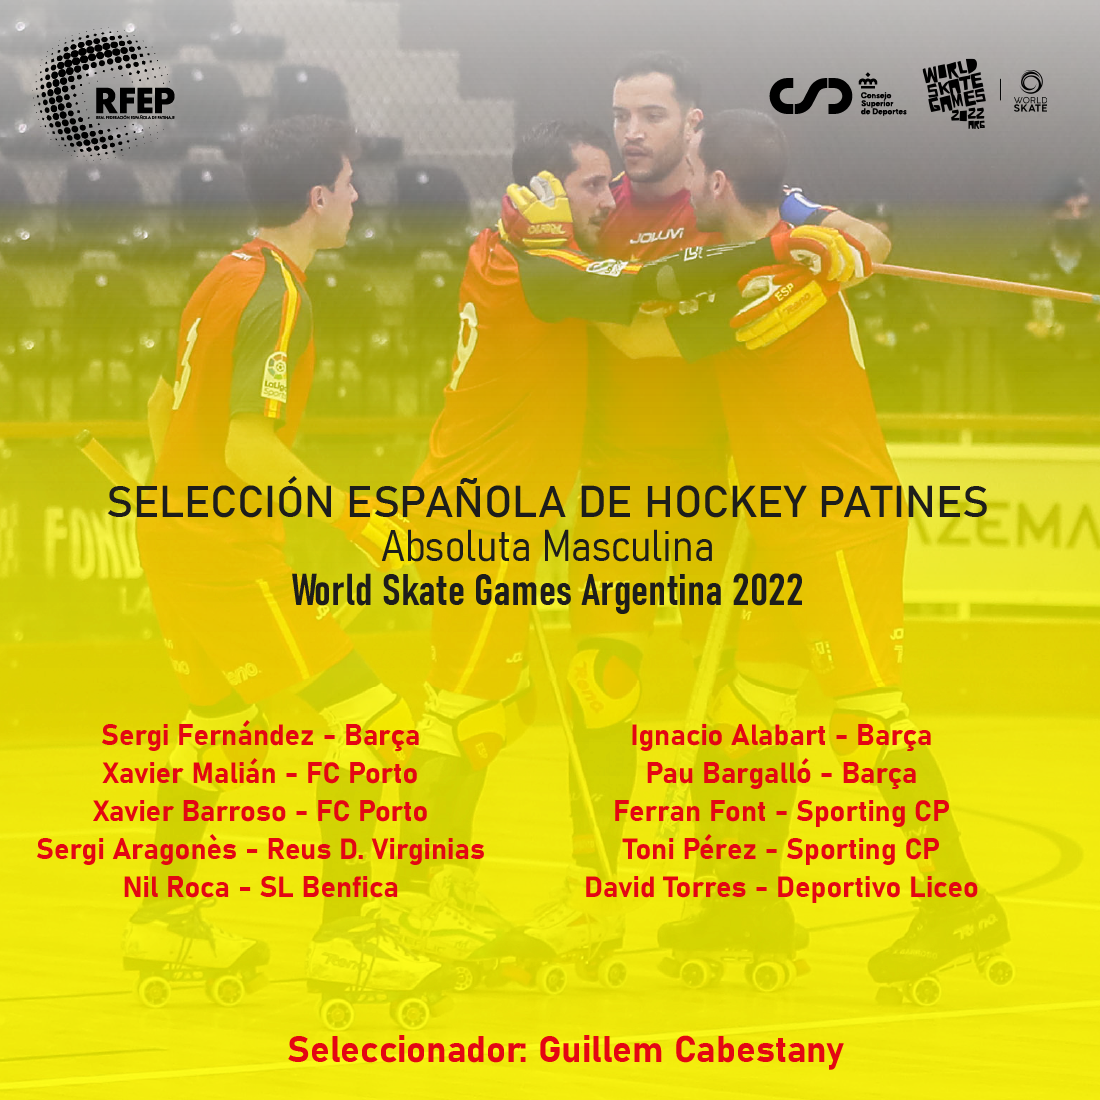 Oficializadas las convocatorias de las selecciones españolas absolutas para los World Skate Games Argentina 2022 - Hockey Patines